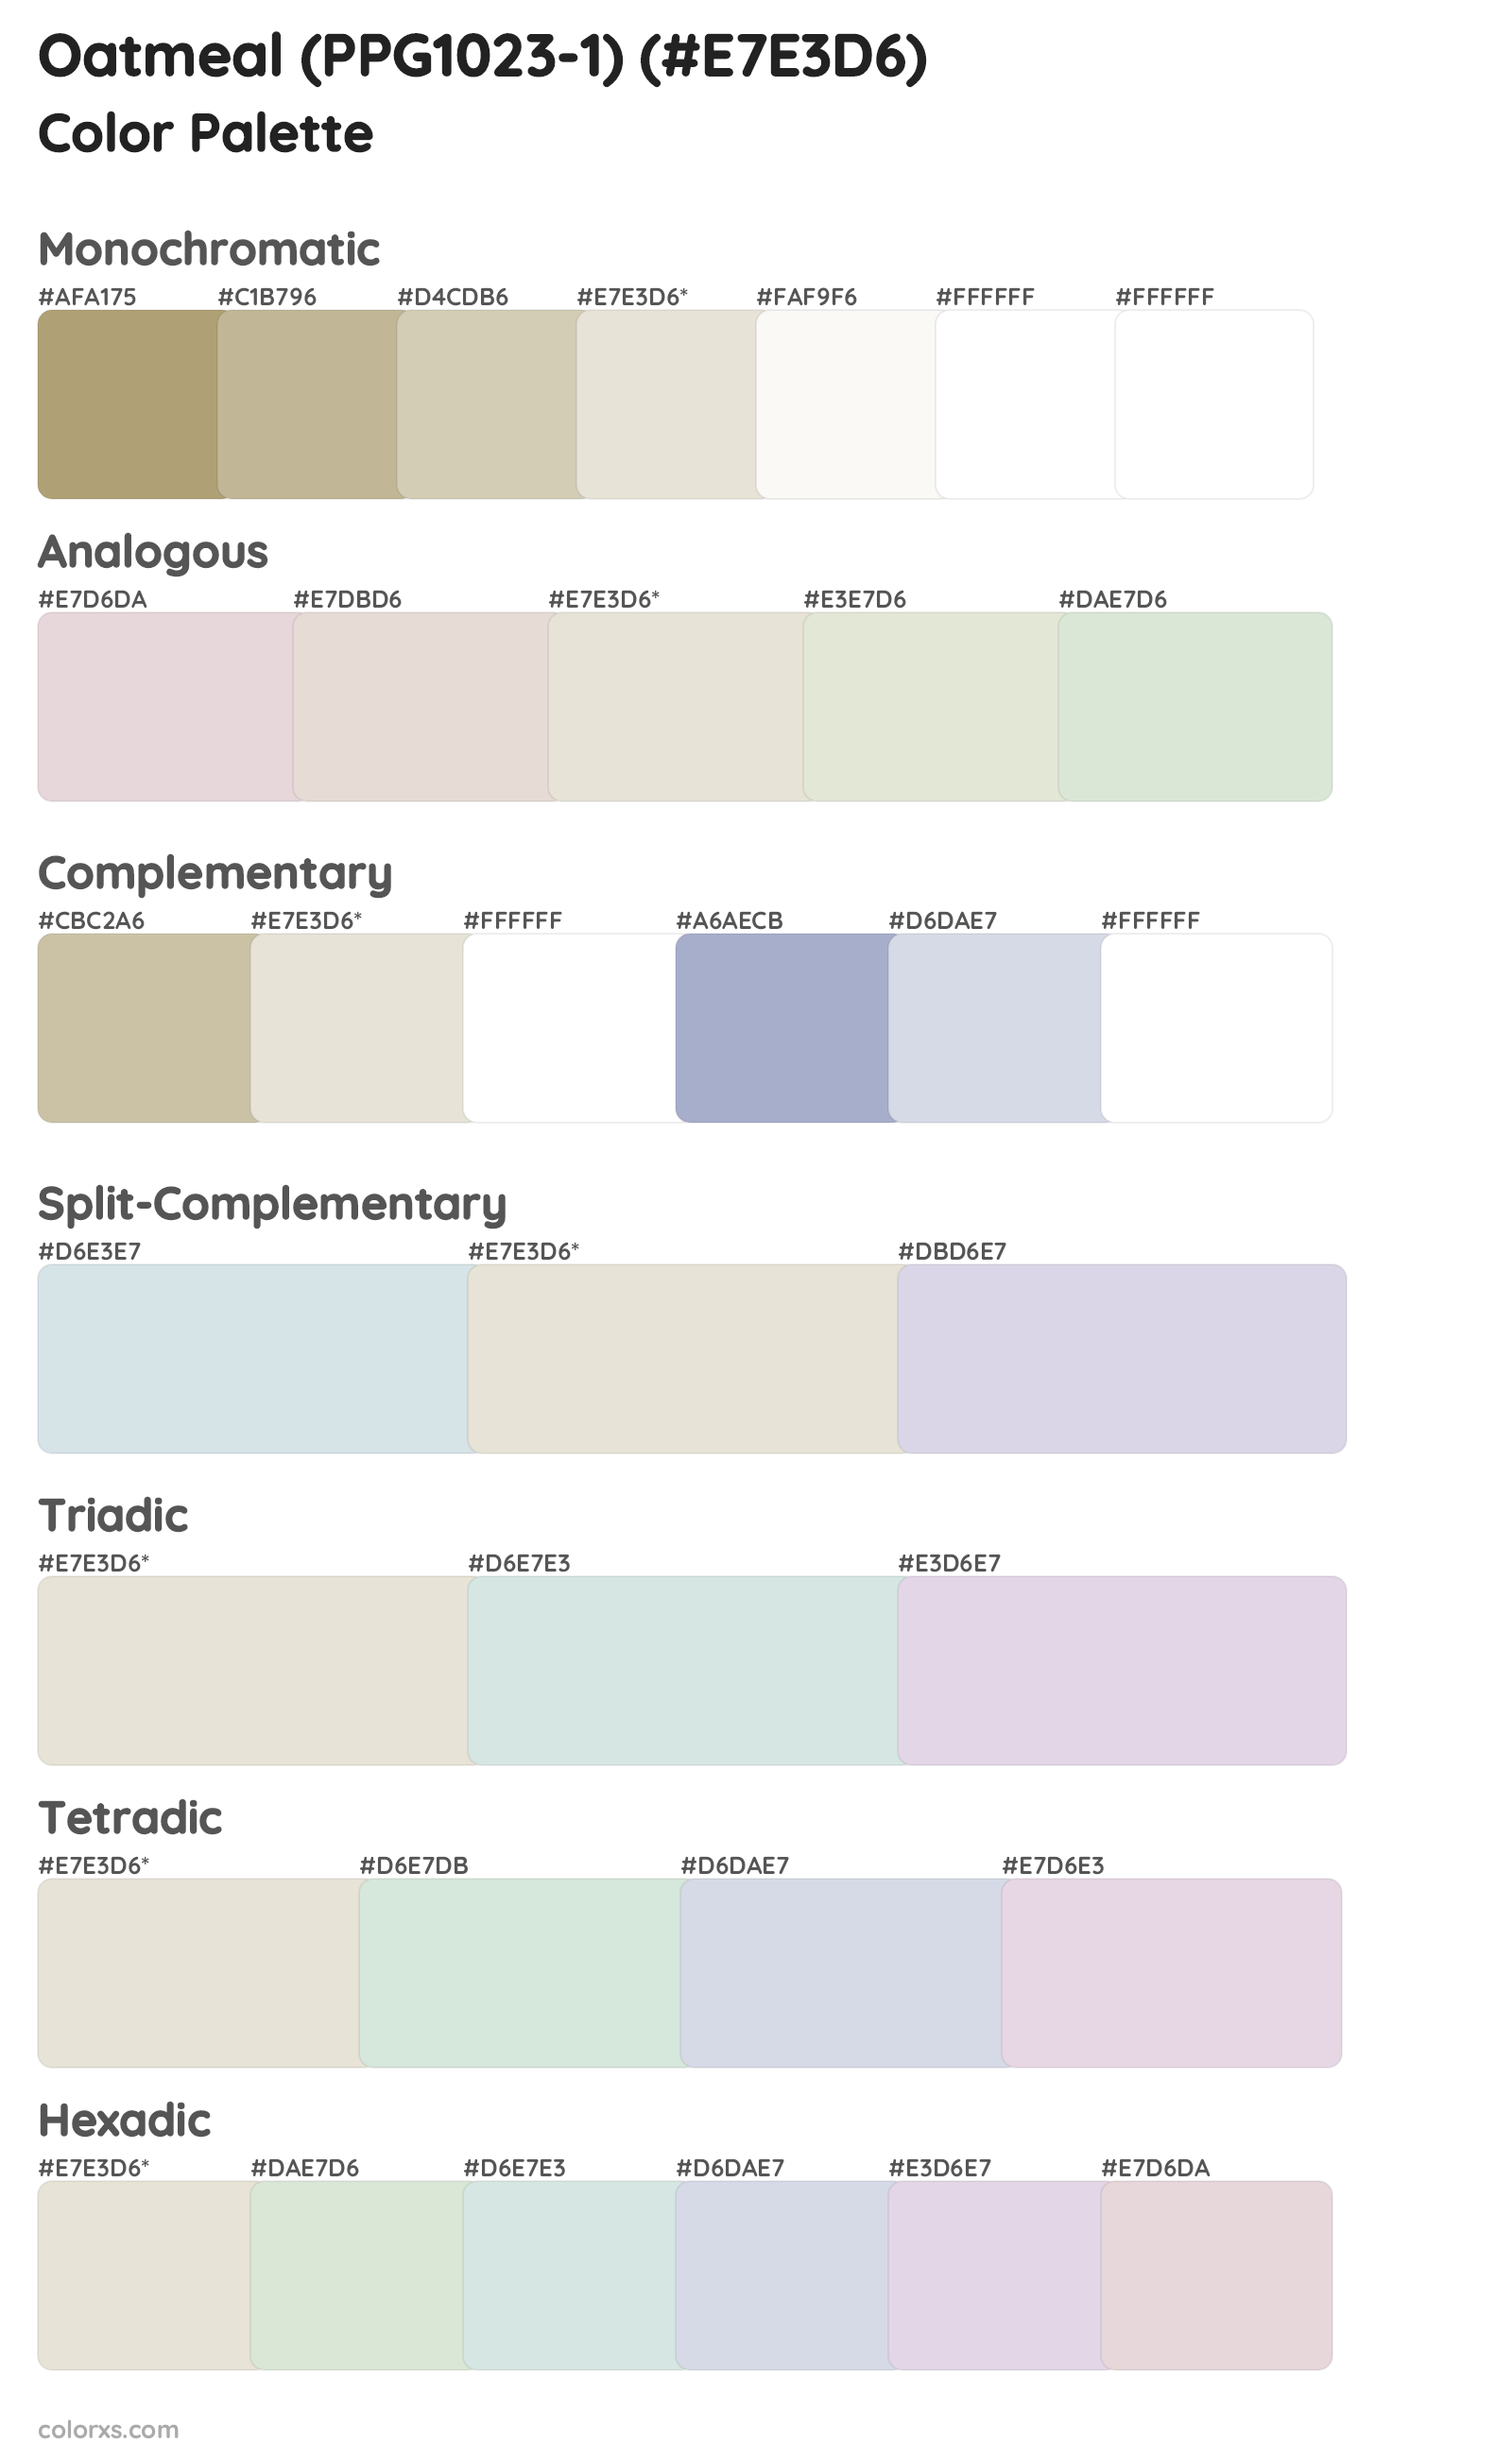 Oatmeal (PPG1023-1) Color Scheme Palettes